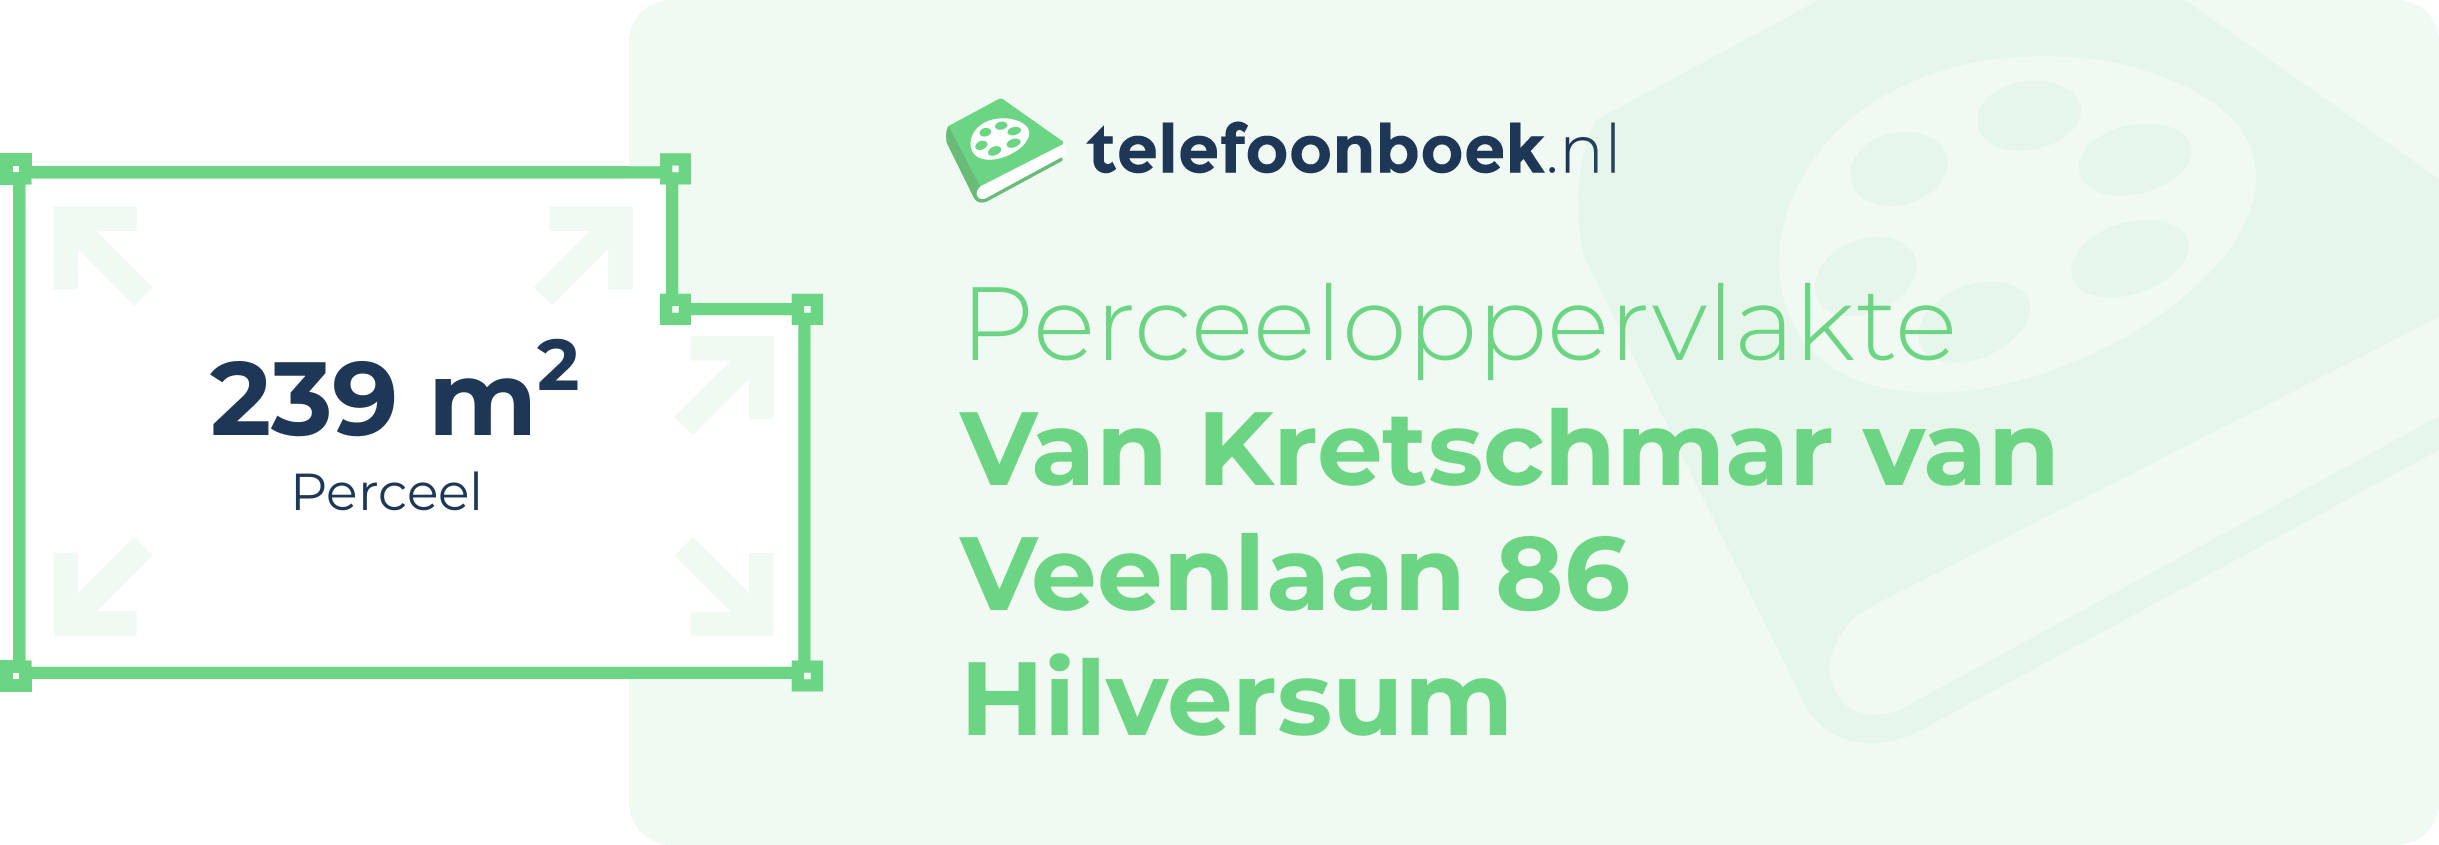 Perceeloppervlakte Van Kretschmar Van Veenlaan 86 Hilversum